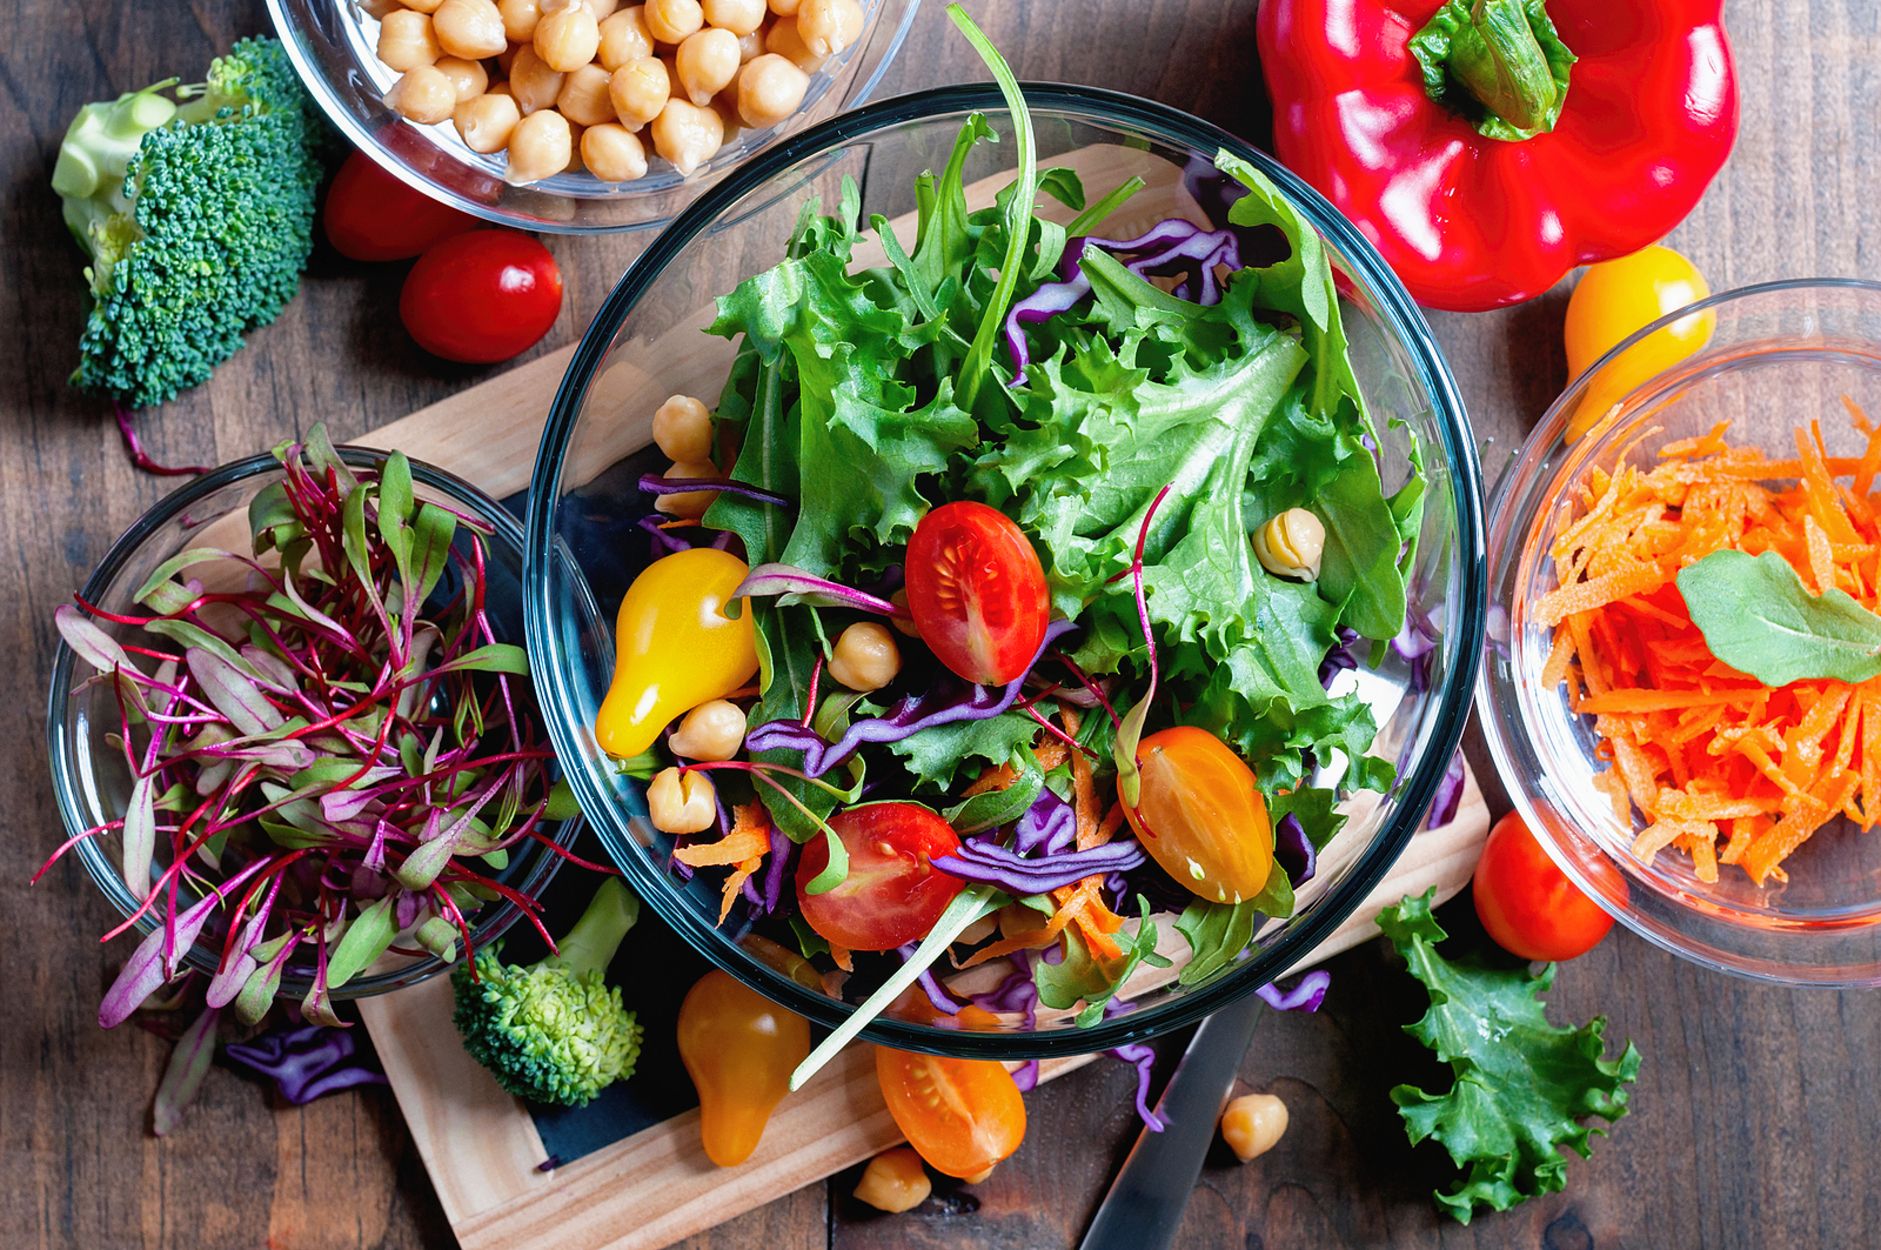 Las dietas vegetarianas y veganas se vinculan con una mayor longevidad y menor riesgo de enfermedad